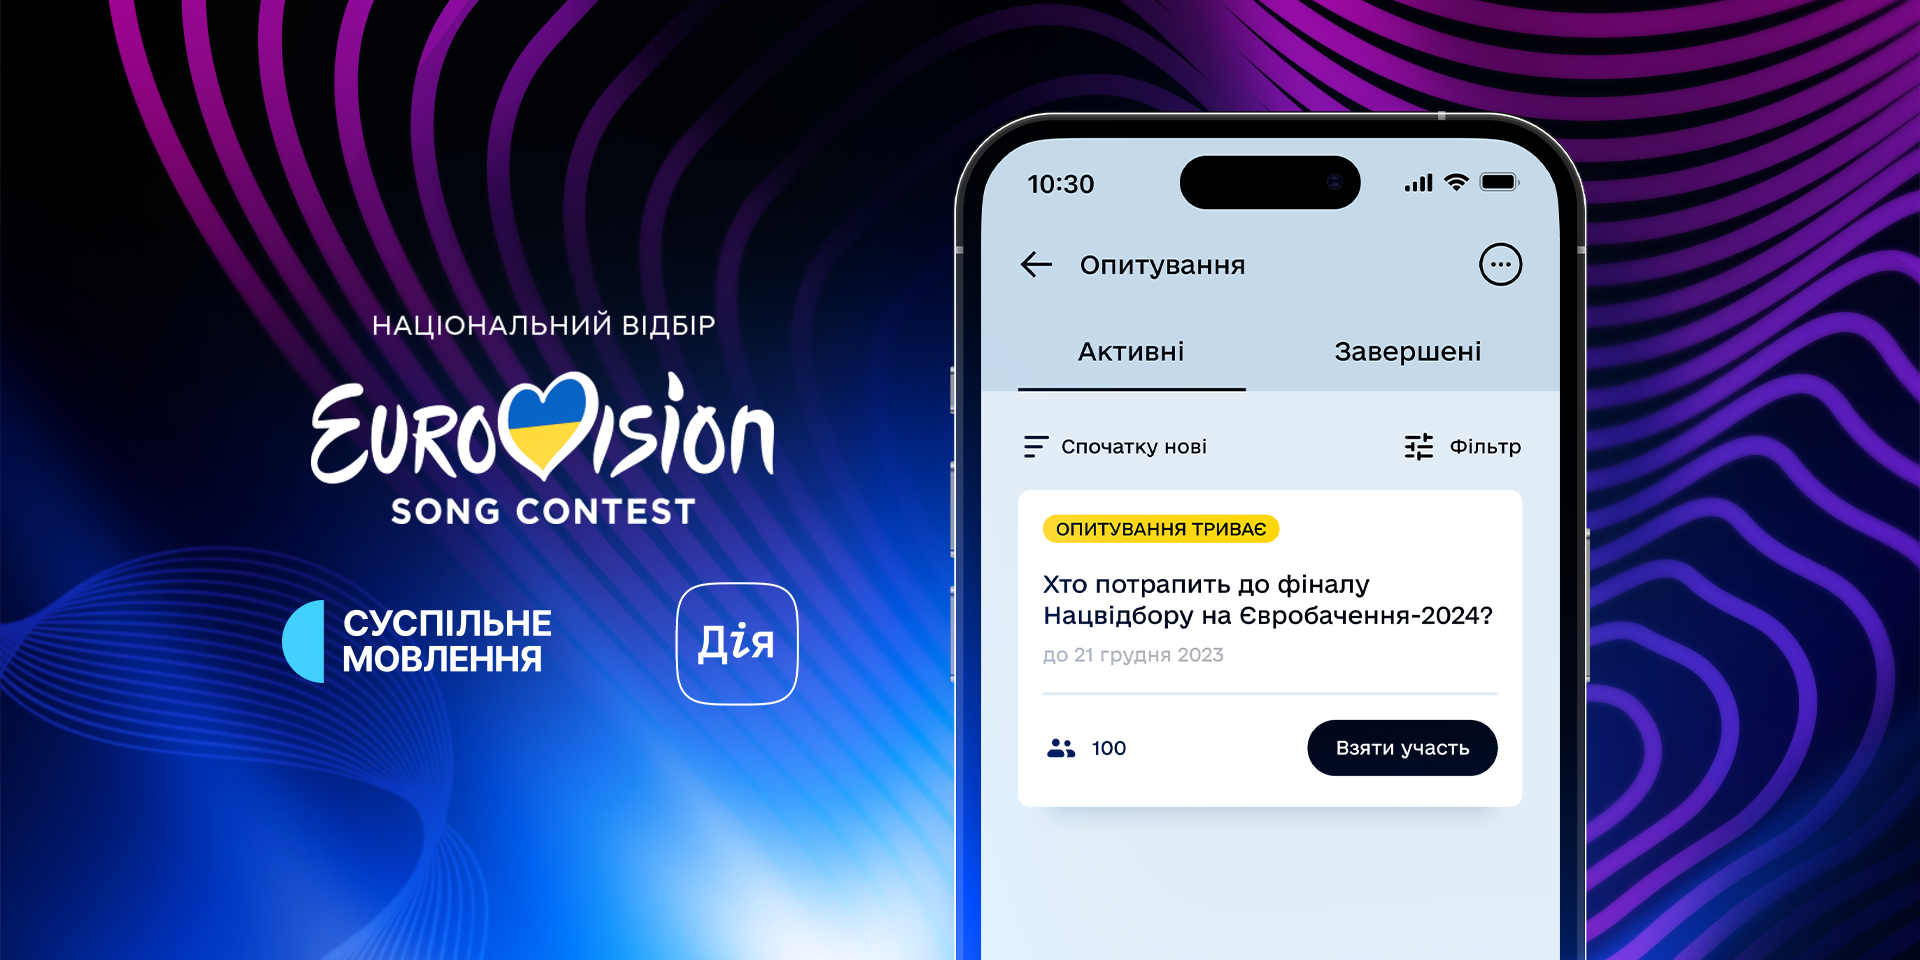 Українці можуть обрати одинадцятого фіналіста Нацвідбору на Євробачення-2024